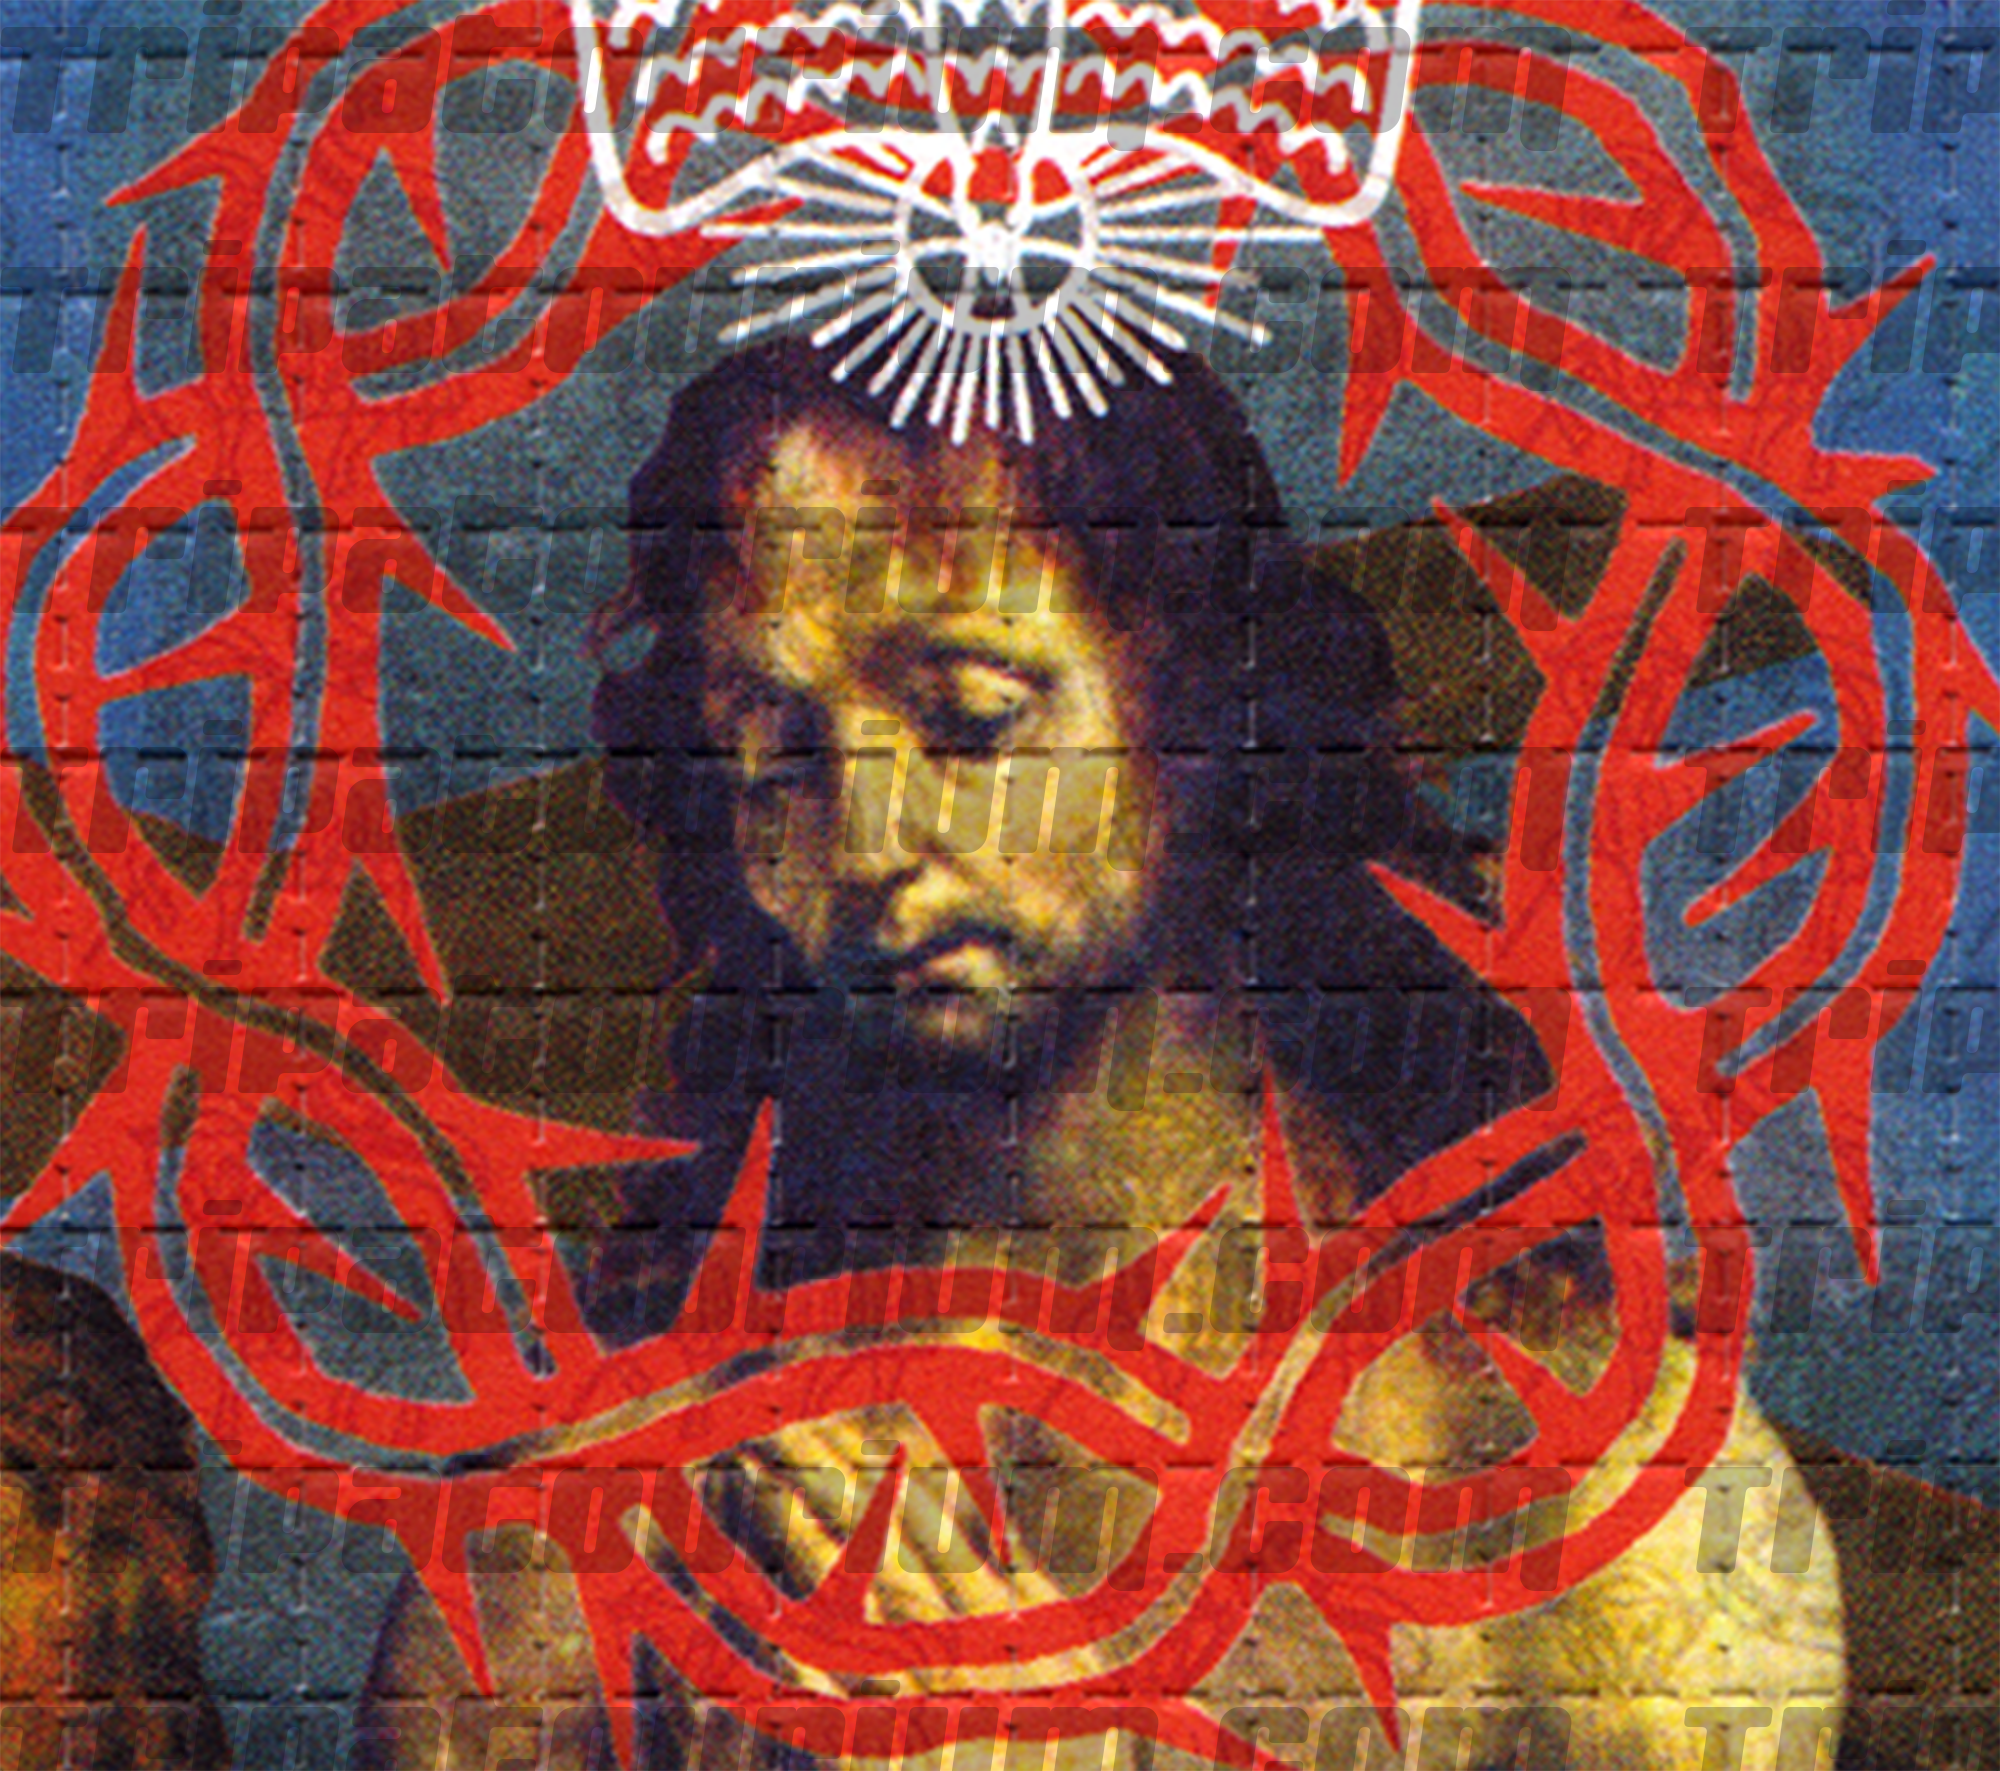 Jesus LSD Art by Rev. Samuel